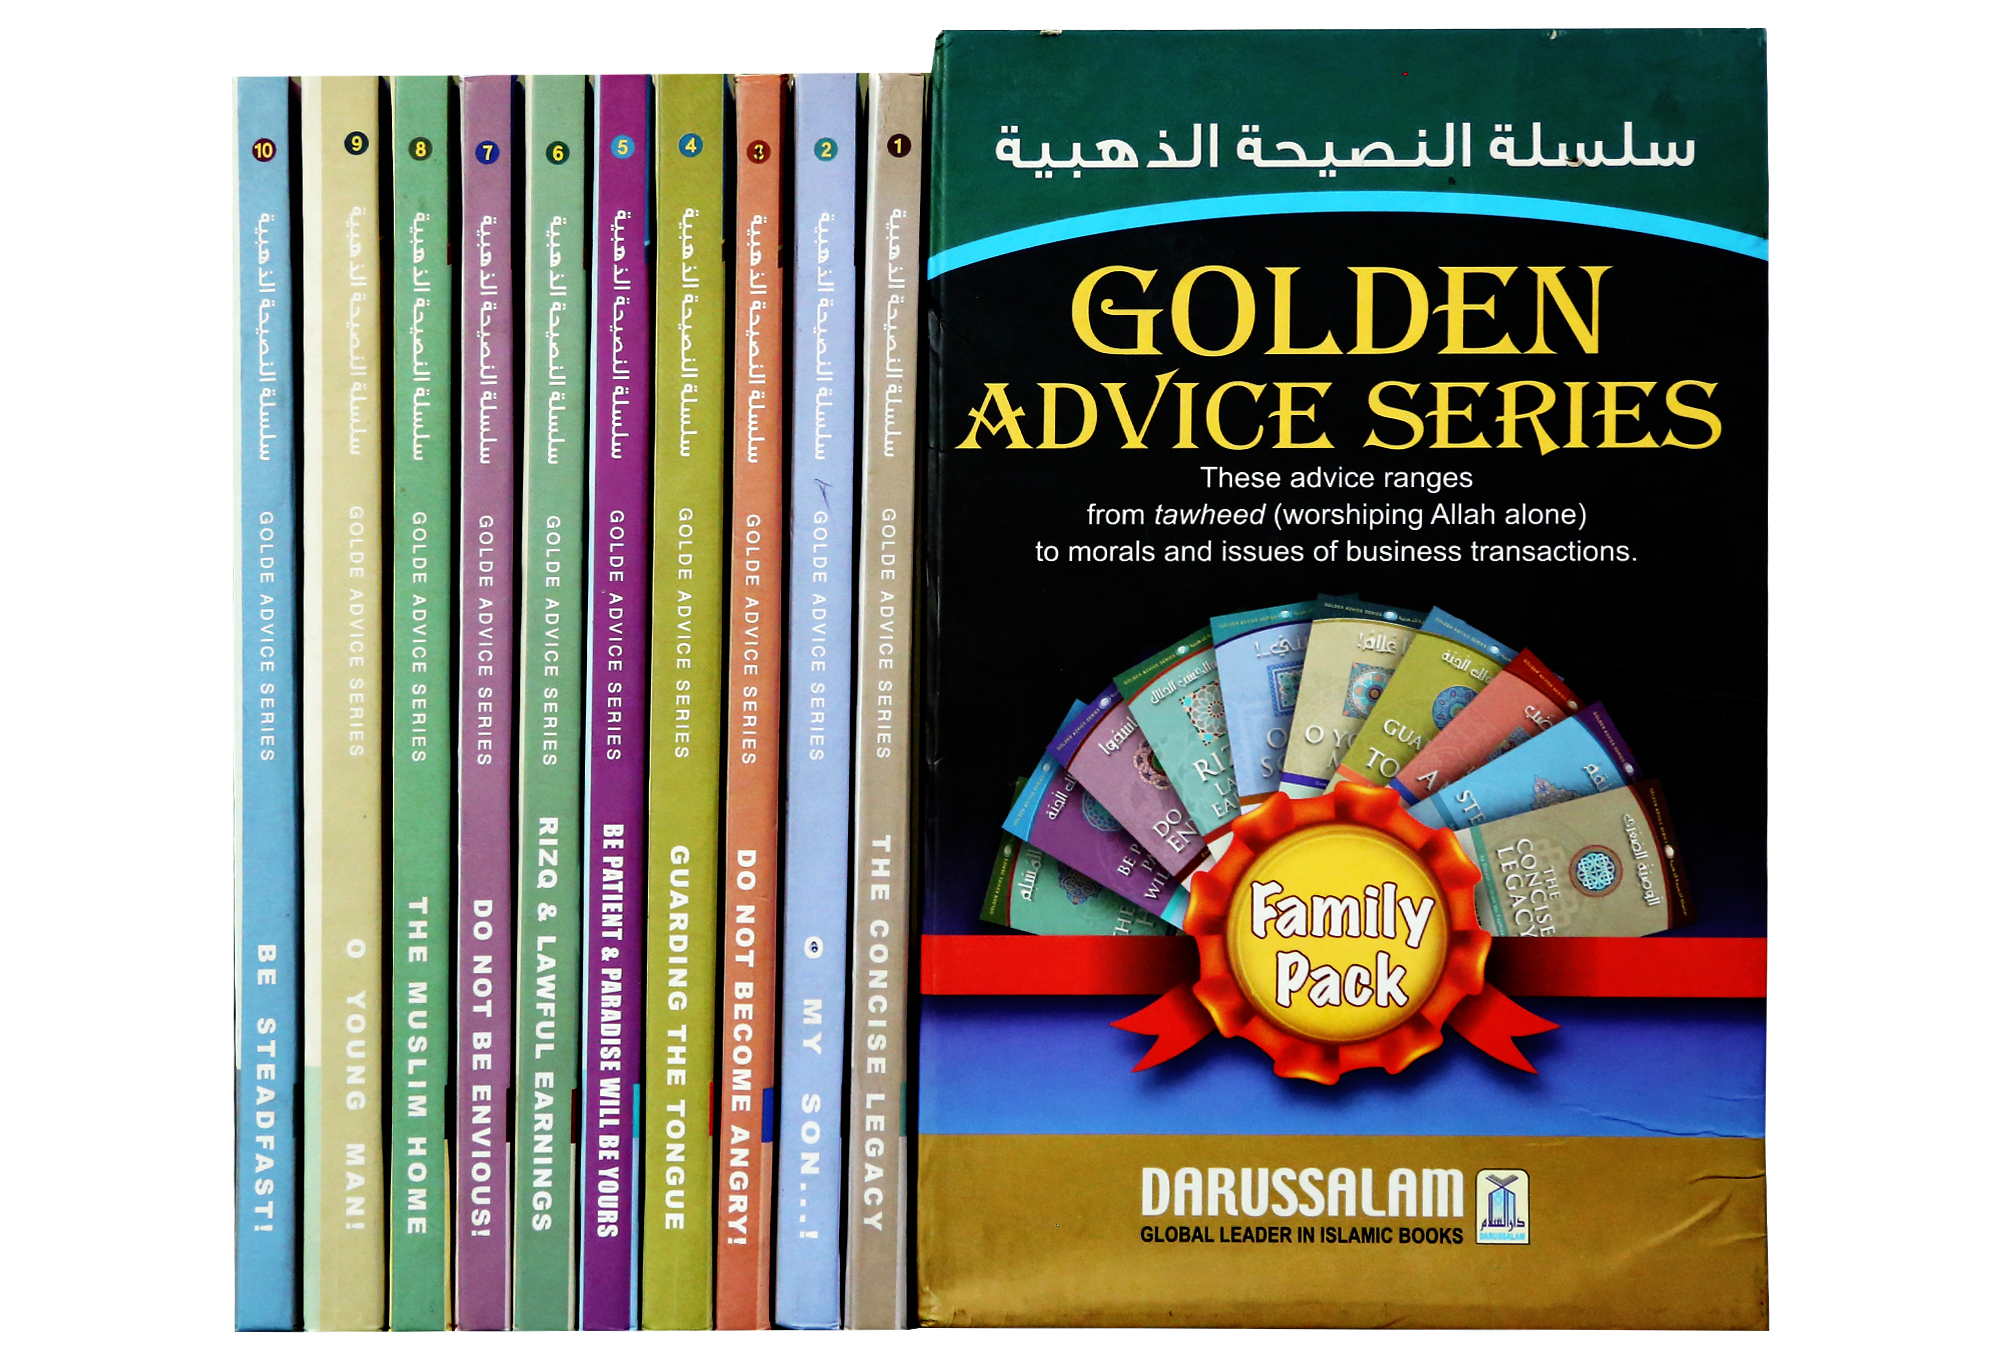 golden-advice-series-10volset–darussalam-20180601-165203